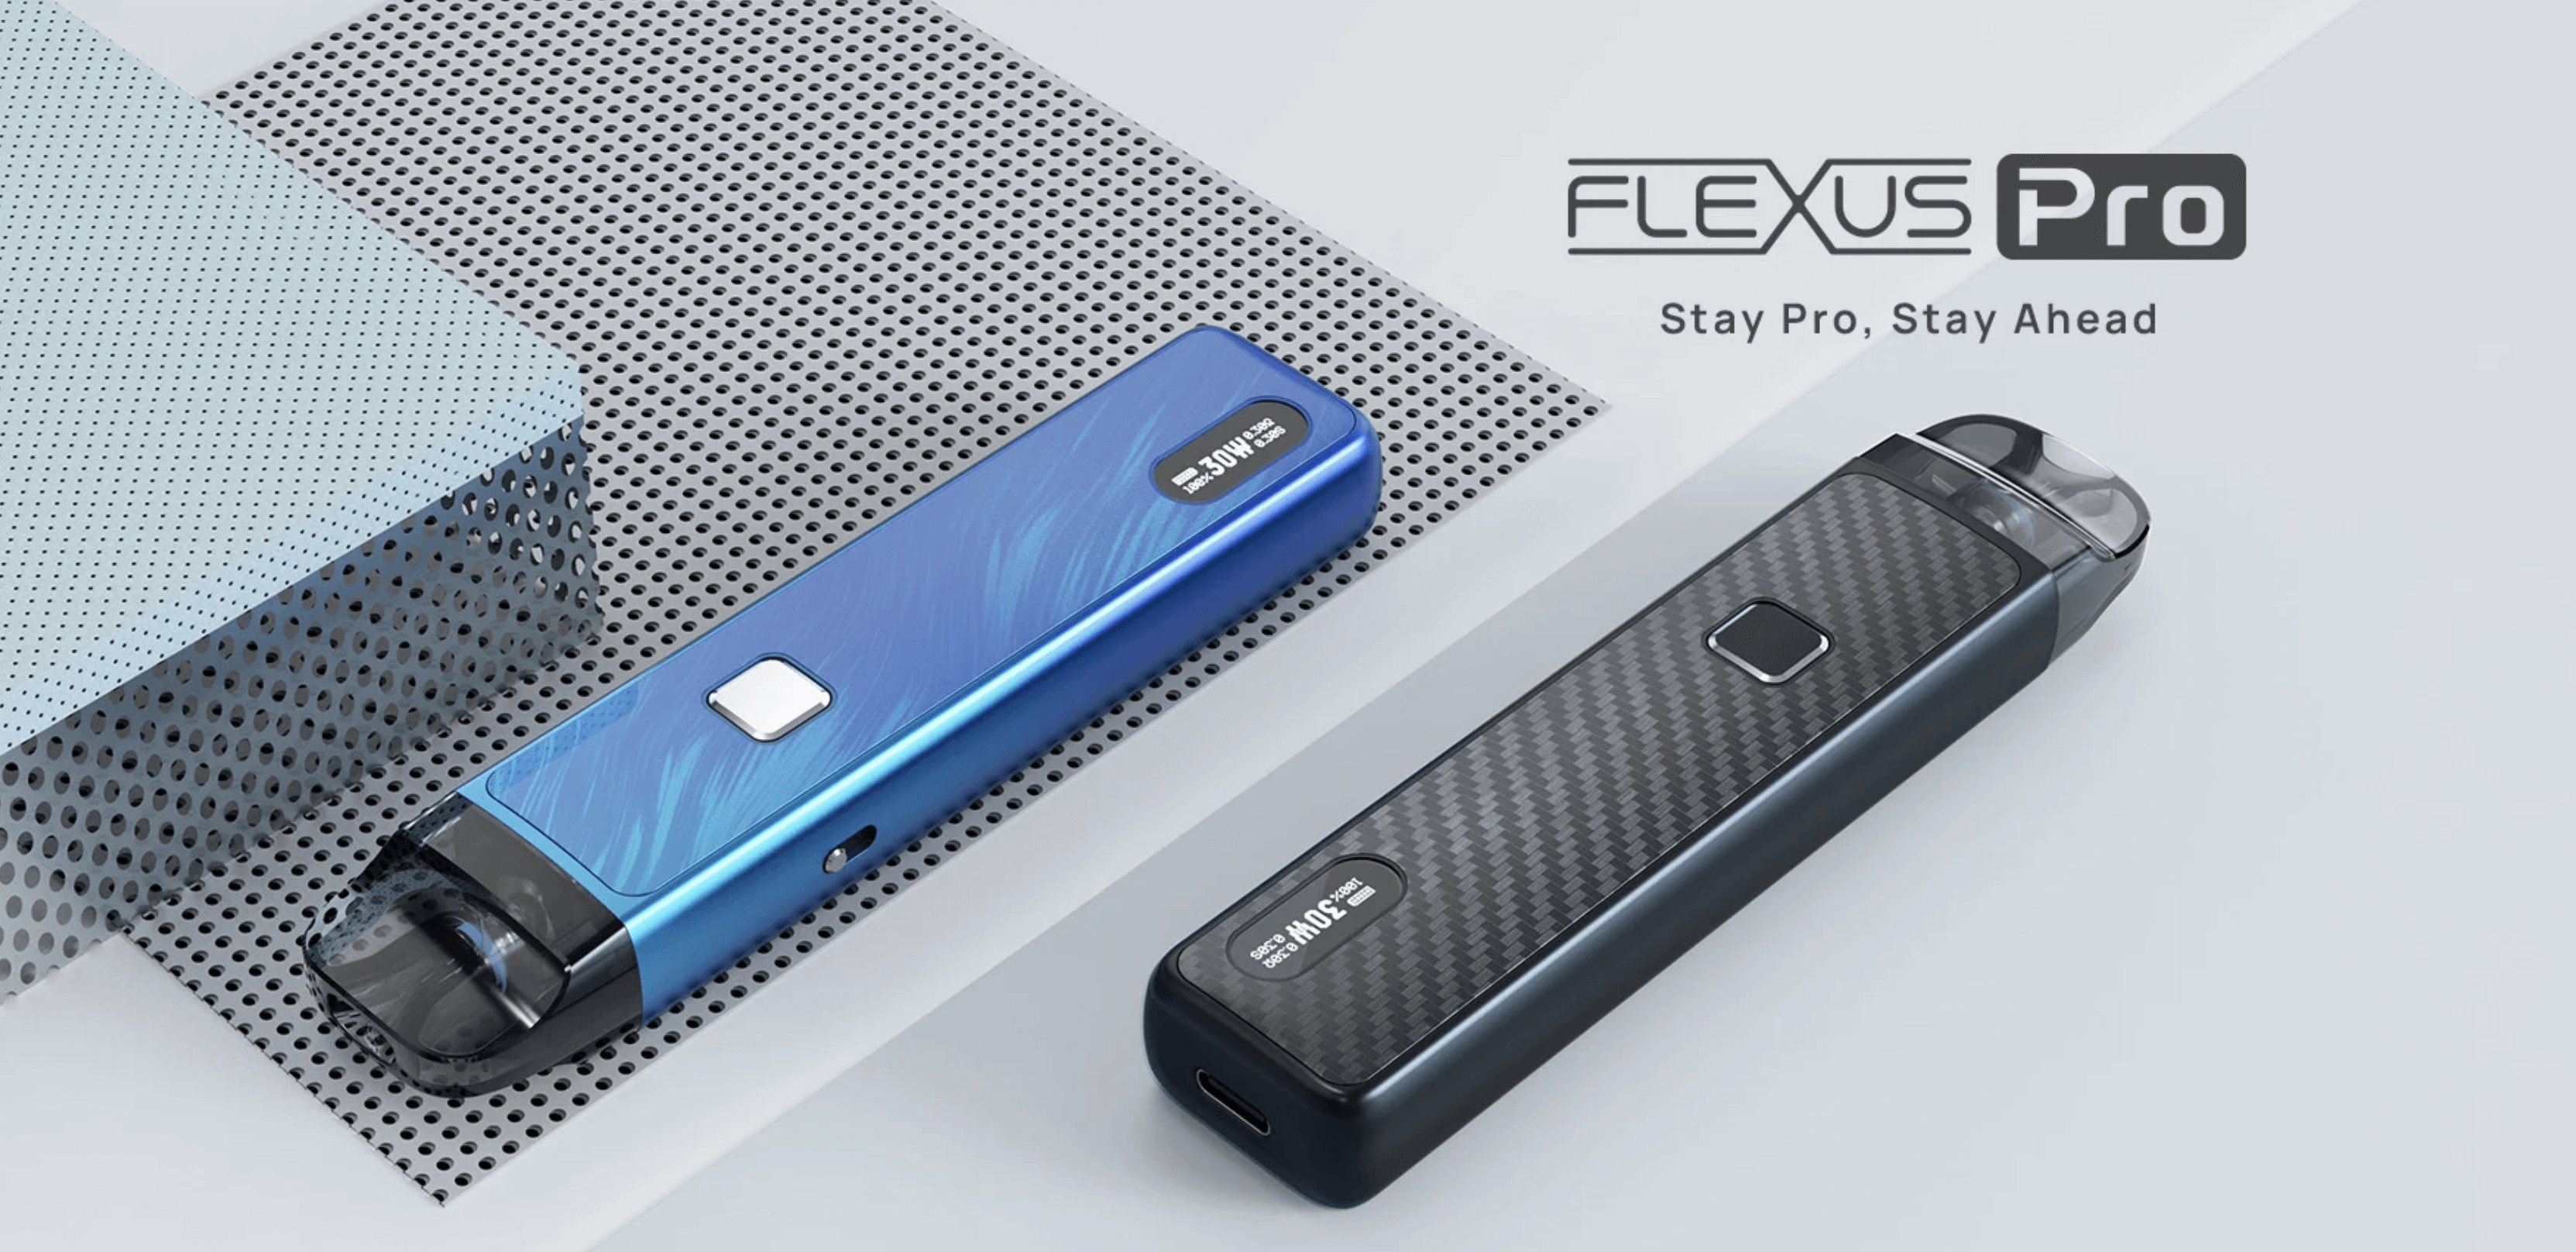 Aspire Flexus Pro Kit - Stay Pro, Stay Ahead